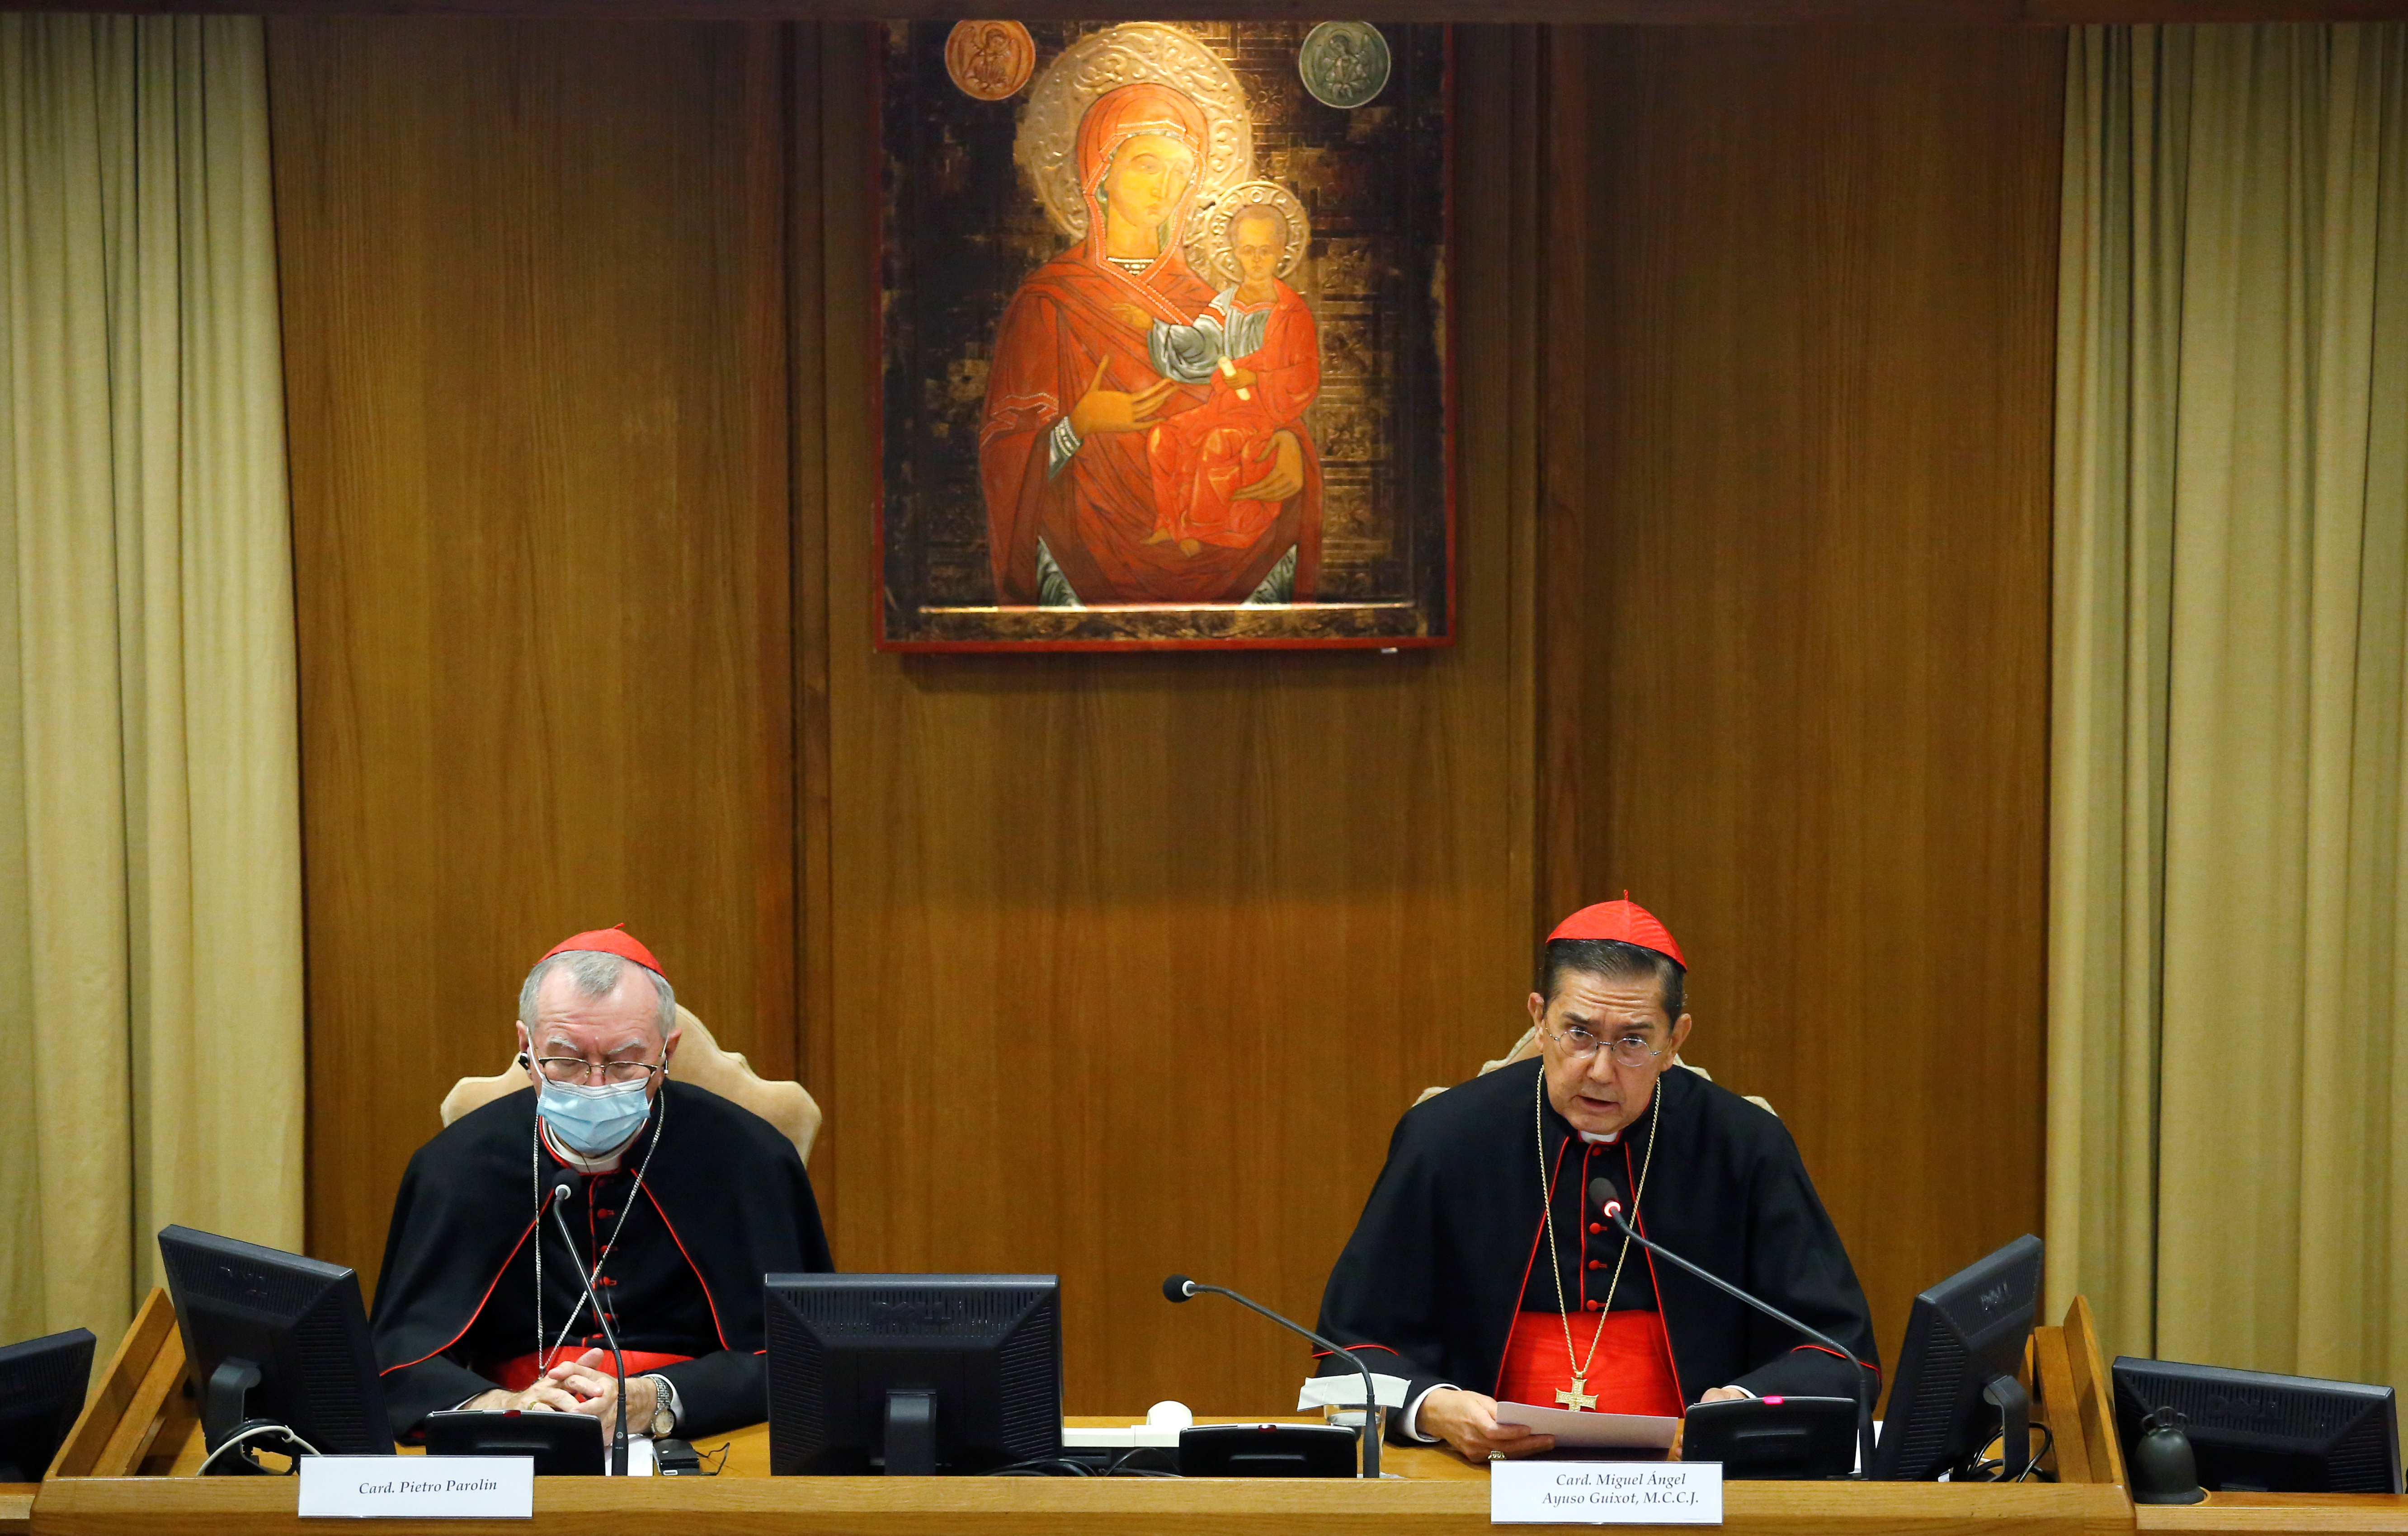 Los cardenales Pietro Parolin y Miguel Ángel Ayuso Guixot presentan la encíclica papal "Fratelli Tutti" en el Vaticano / October 4, 2020. REUTERS/Remo Casilli